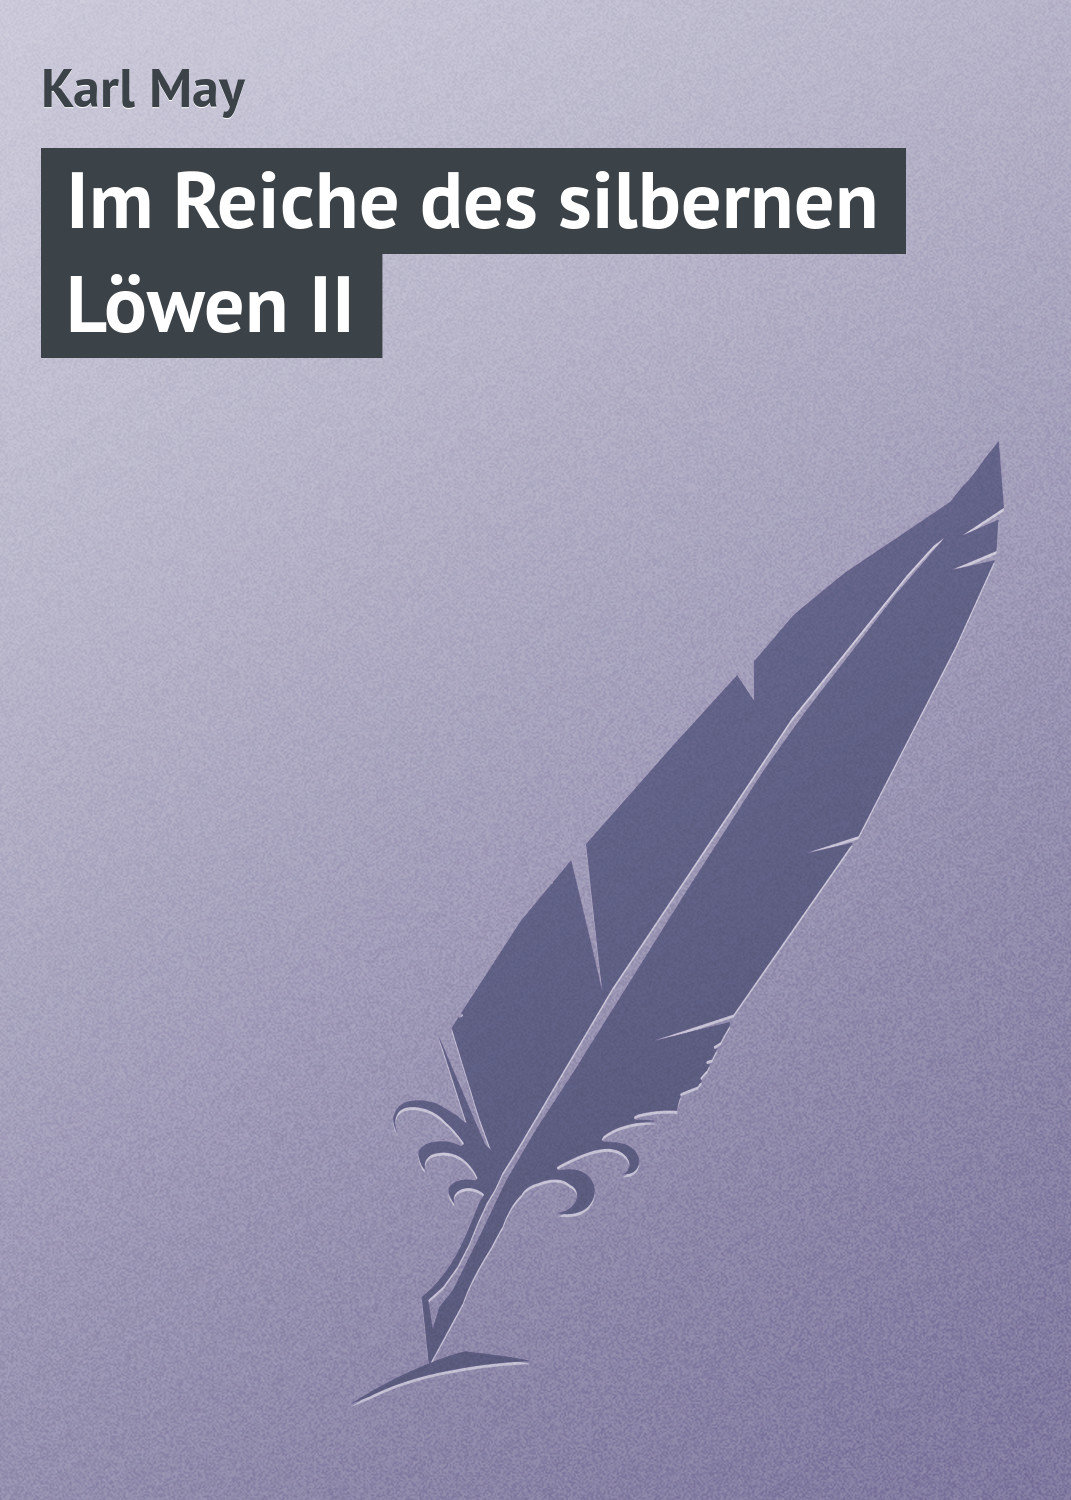 Книга Im Reiche des silbernen Löwen II из серии , созданная Karl May, может относится к жанру Зарубежная старинная литература, Зарубежная классика. Стоимость электронной книги Im Reiche des silbernen Löwen II с идентификатором 21104374 составляет 5.99 руб.